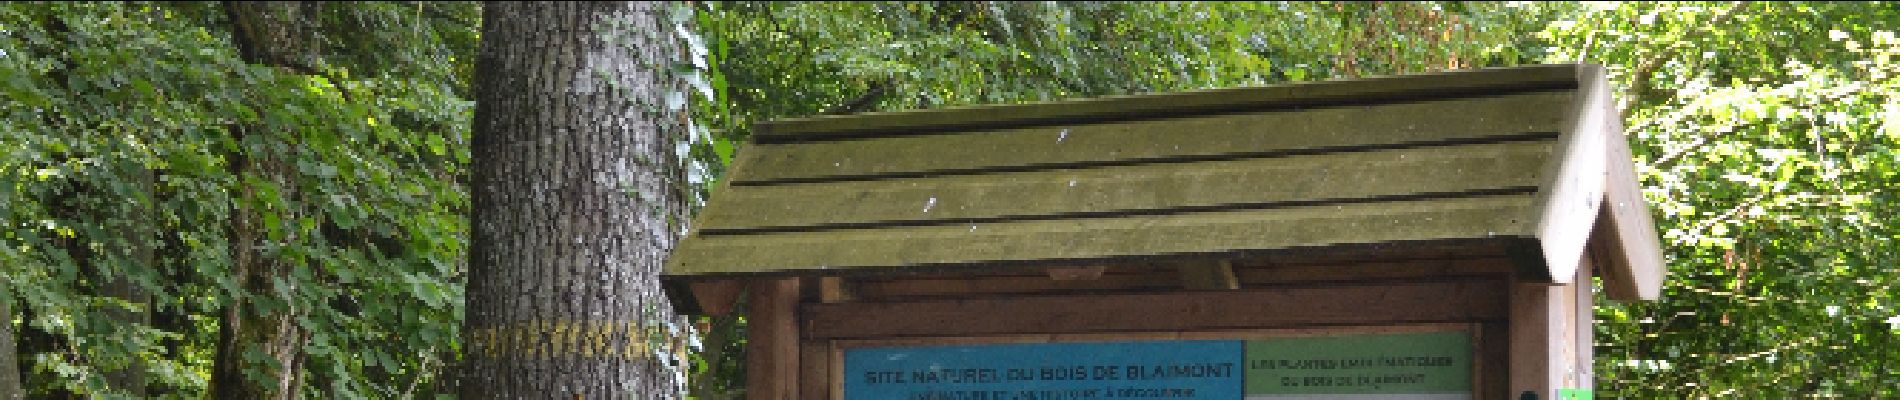 Point d'intérêt Chimay - Bois de Blaimont  - Photo